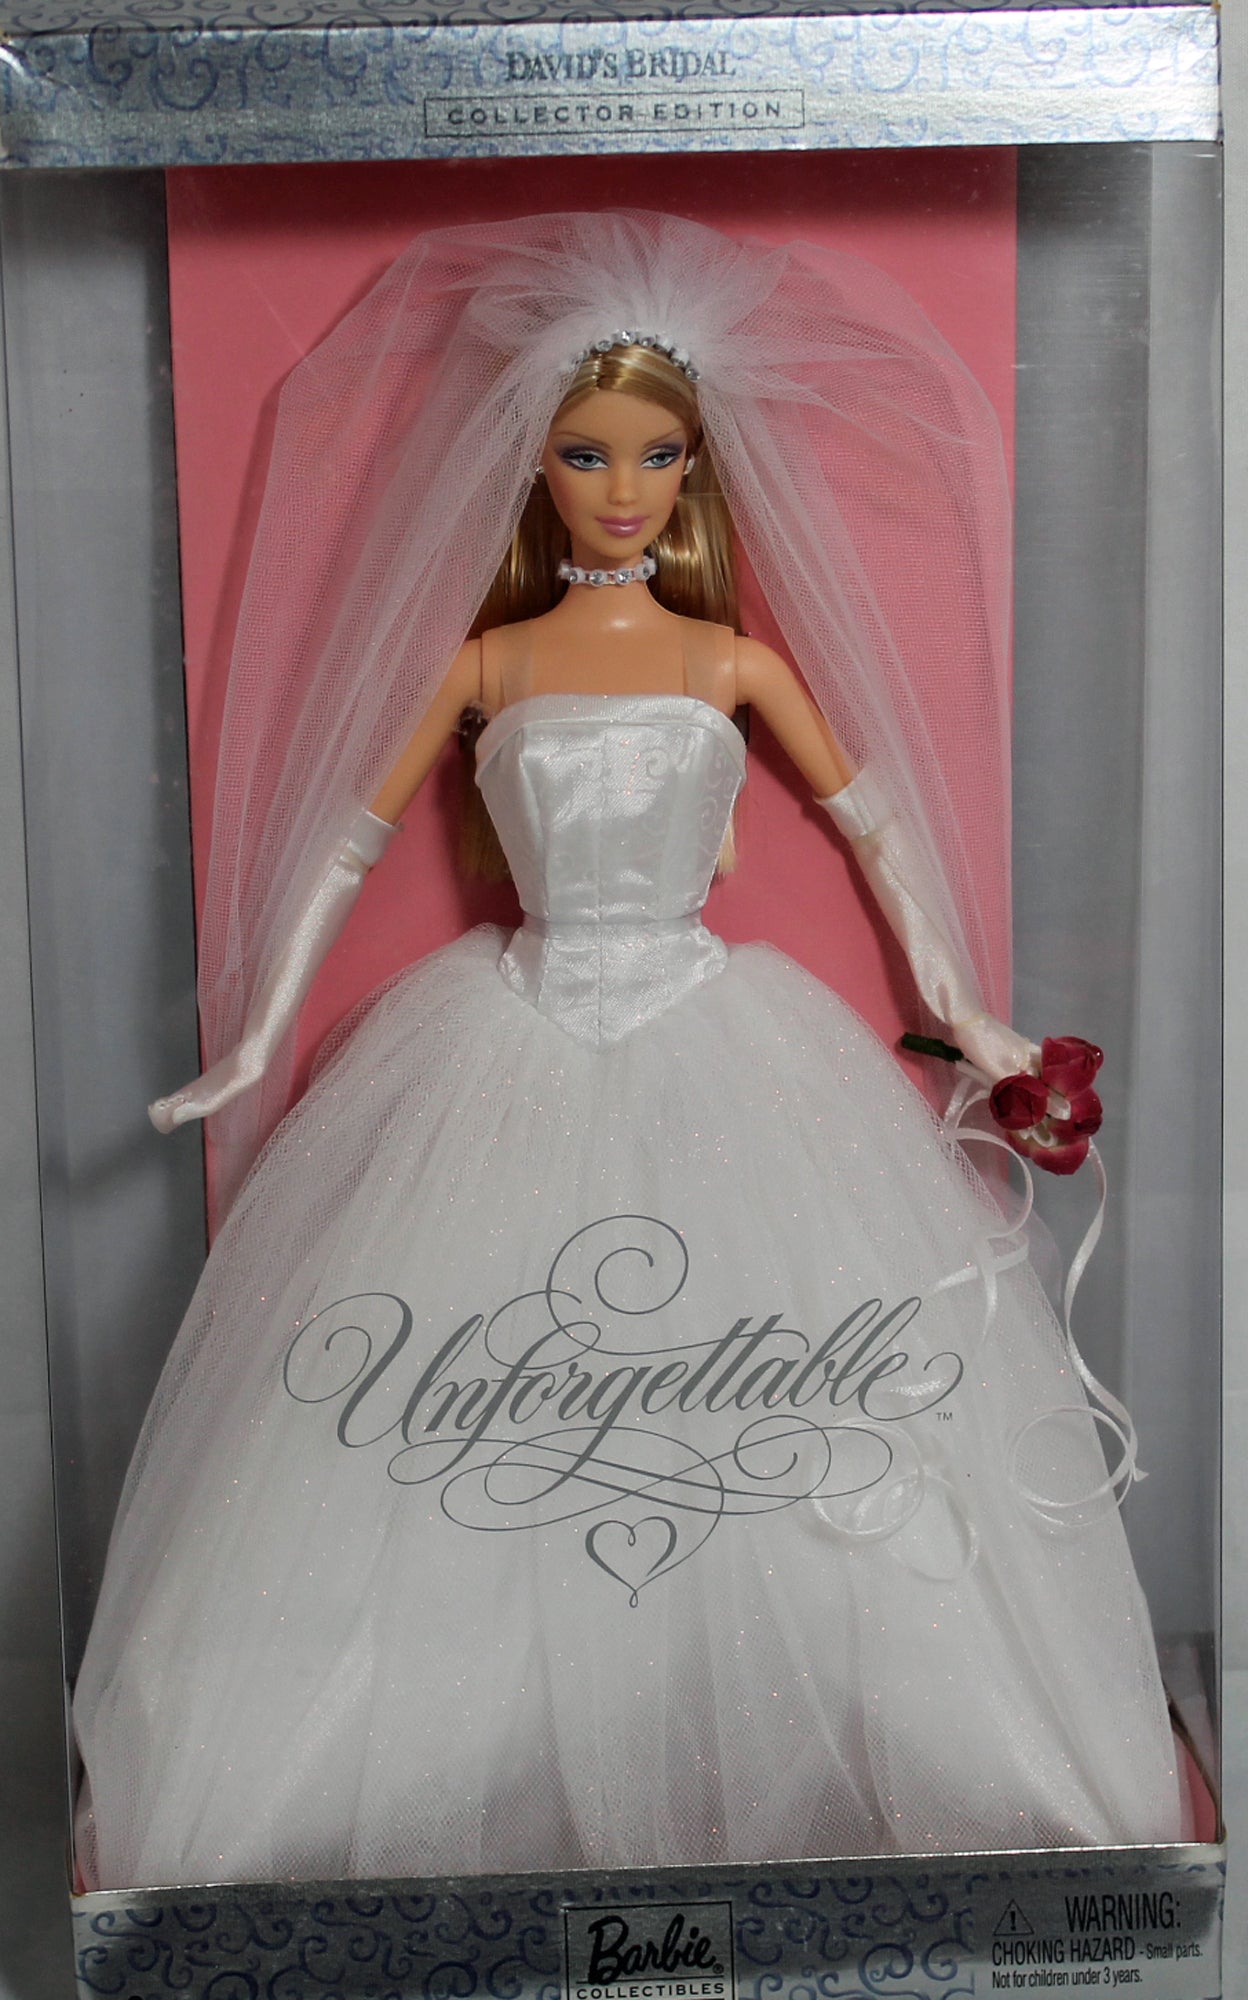 2004 David's Bridal Unforgettable Barbie (4), Paul DollyTemptation